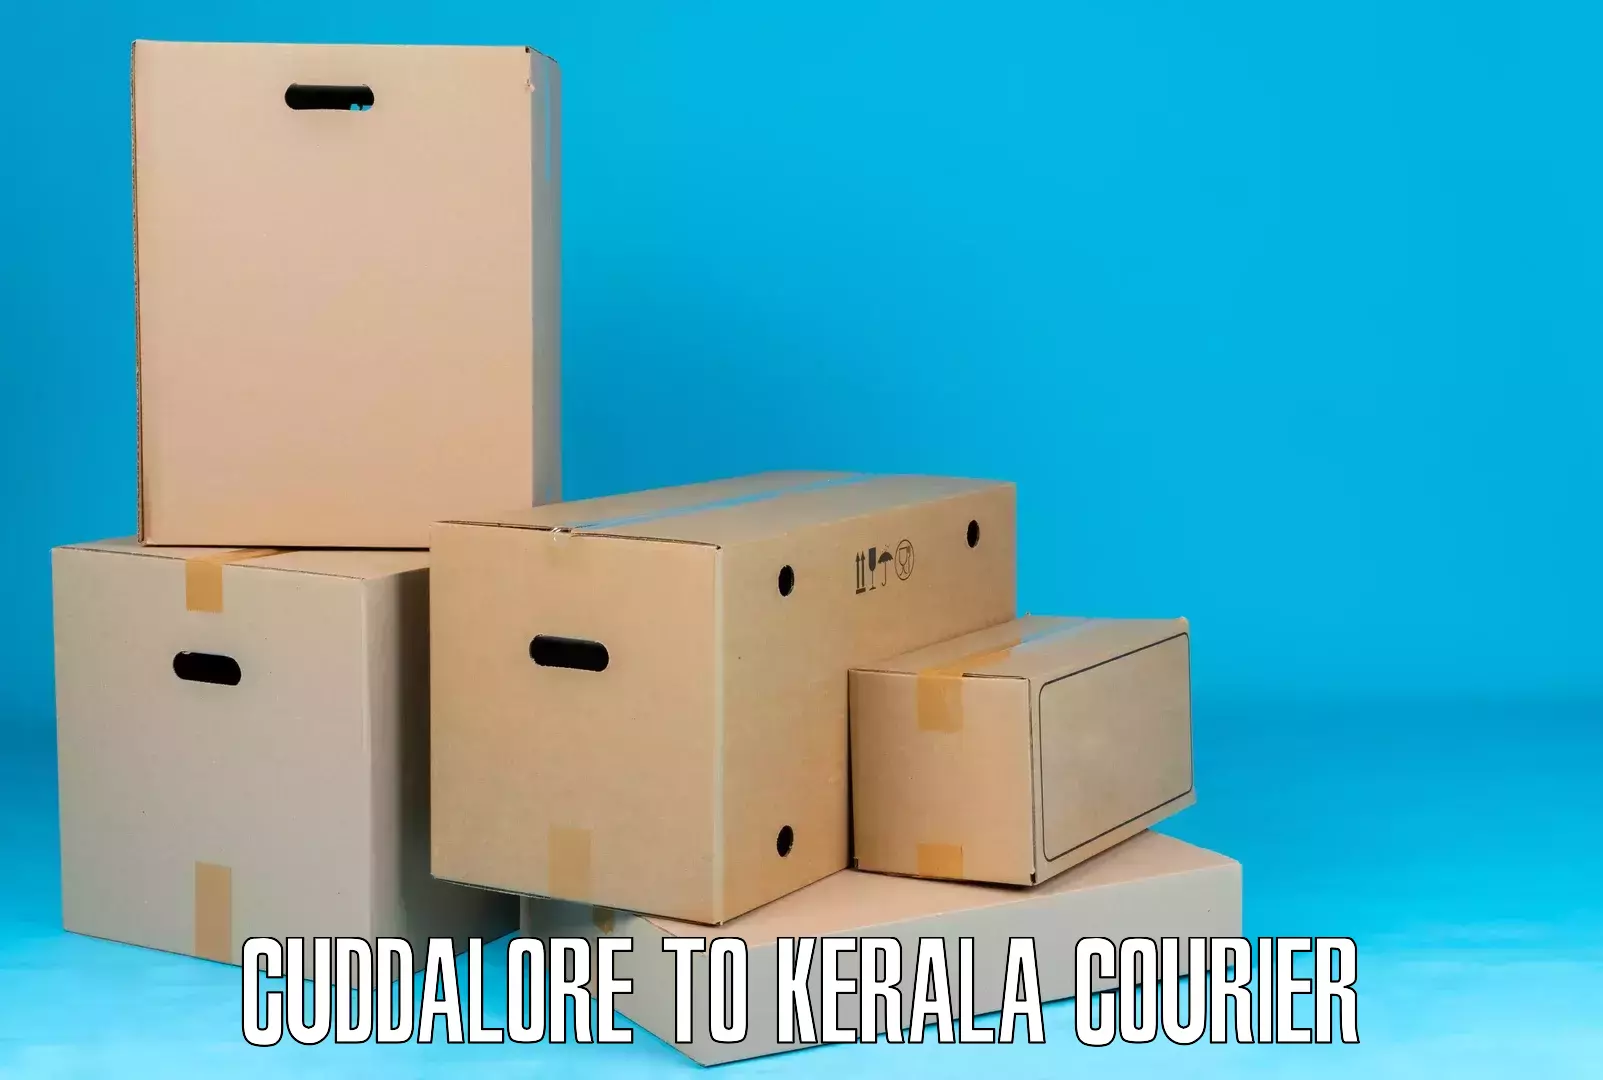 Package forwarding Cuddalore to Guruvayoor